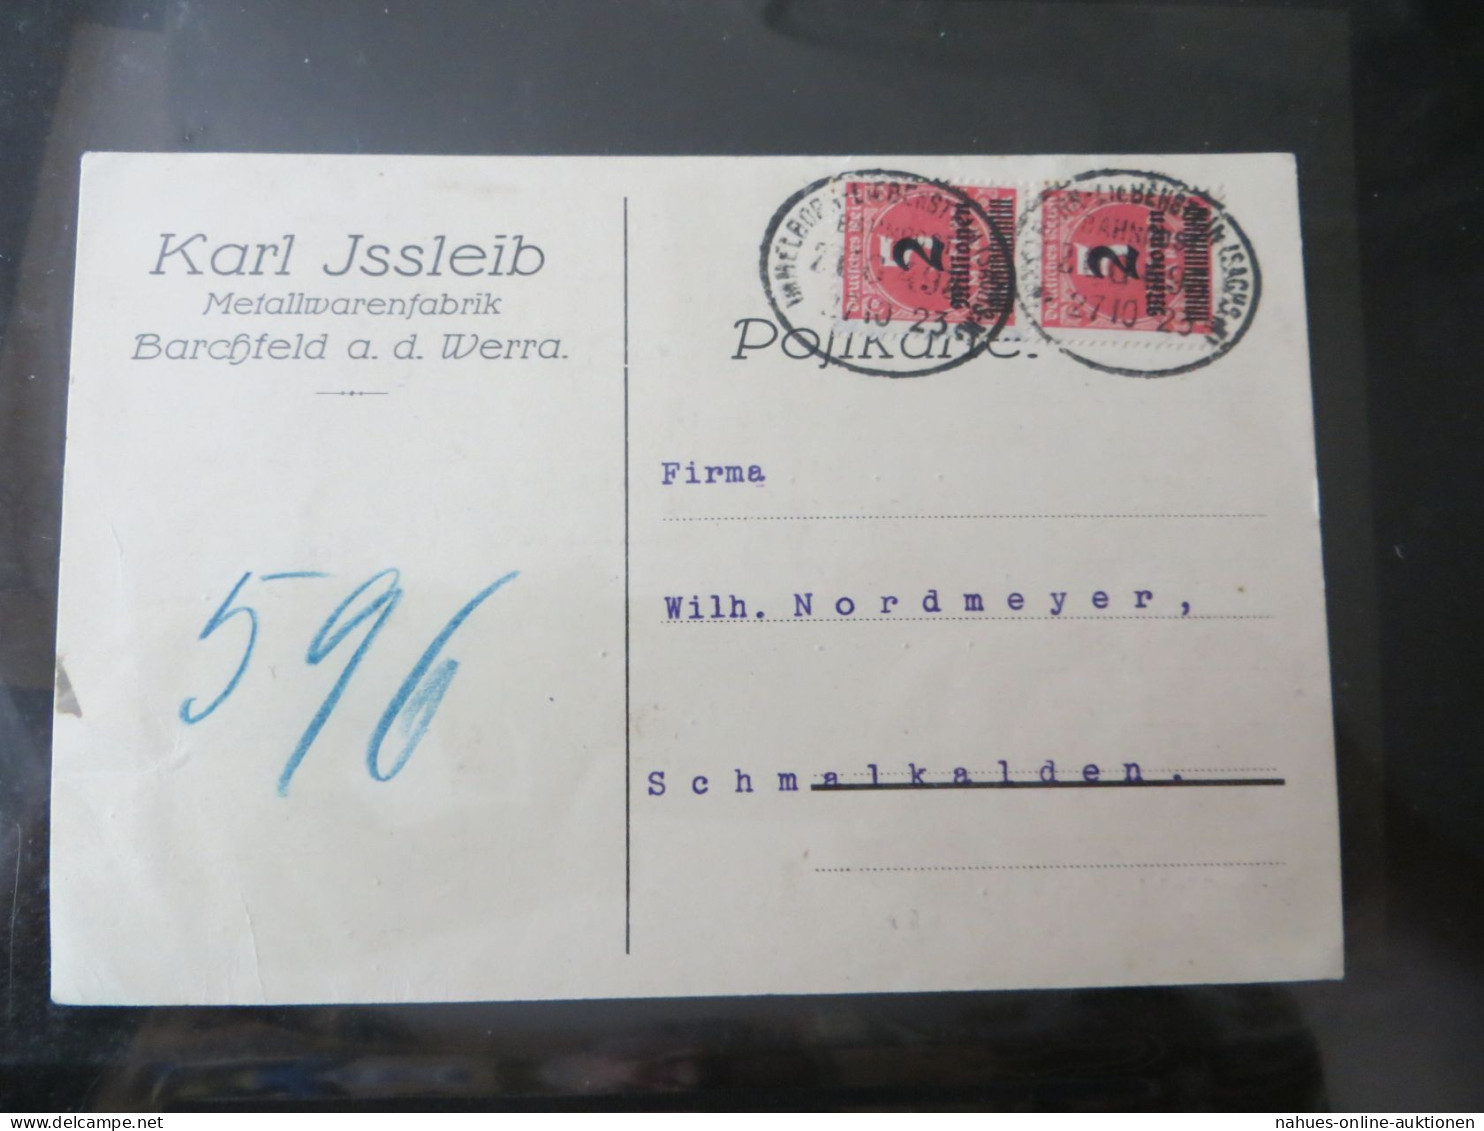 Bahnpost schöne Nachlass Sammlung Deutsches Reich ab 1880 Festpreis 70,00